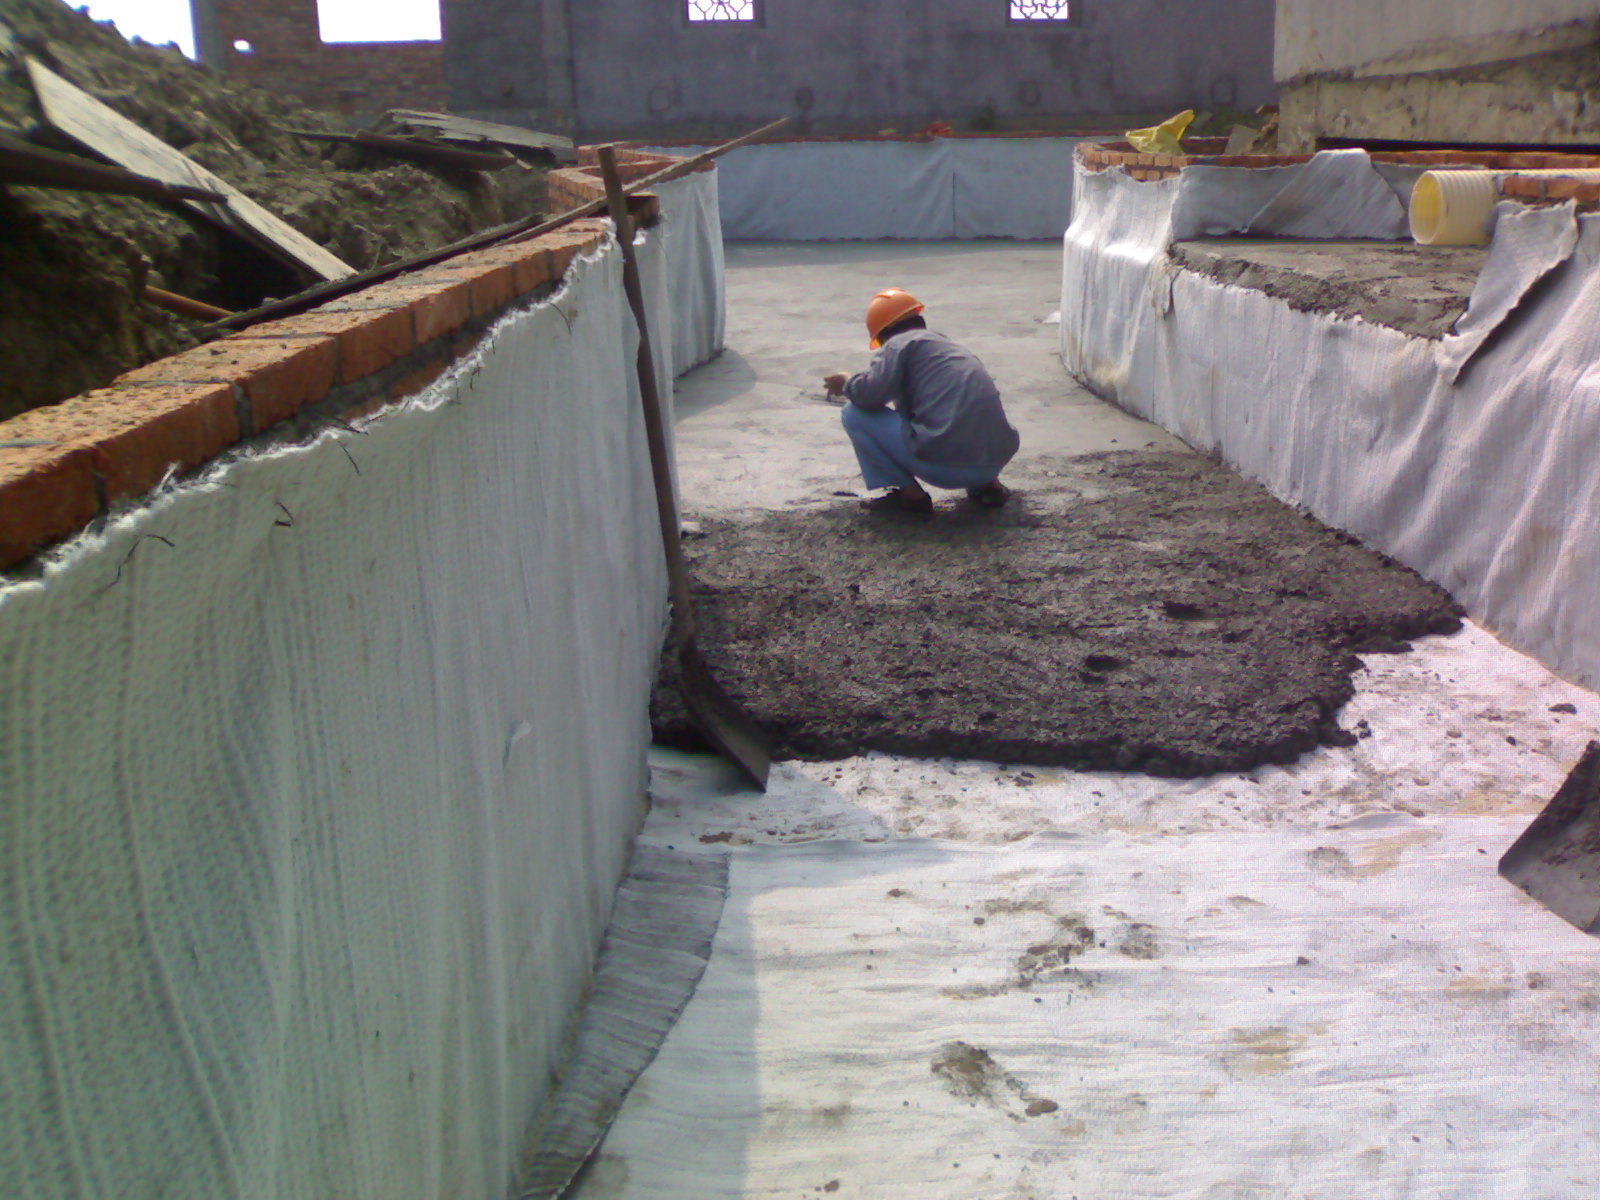 灌浆和铺土工膜成为堤身防渗常用措施